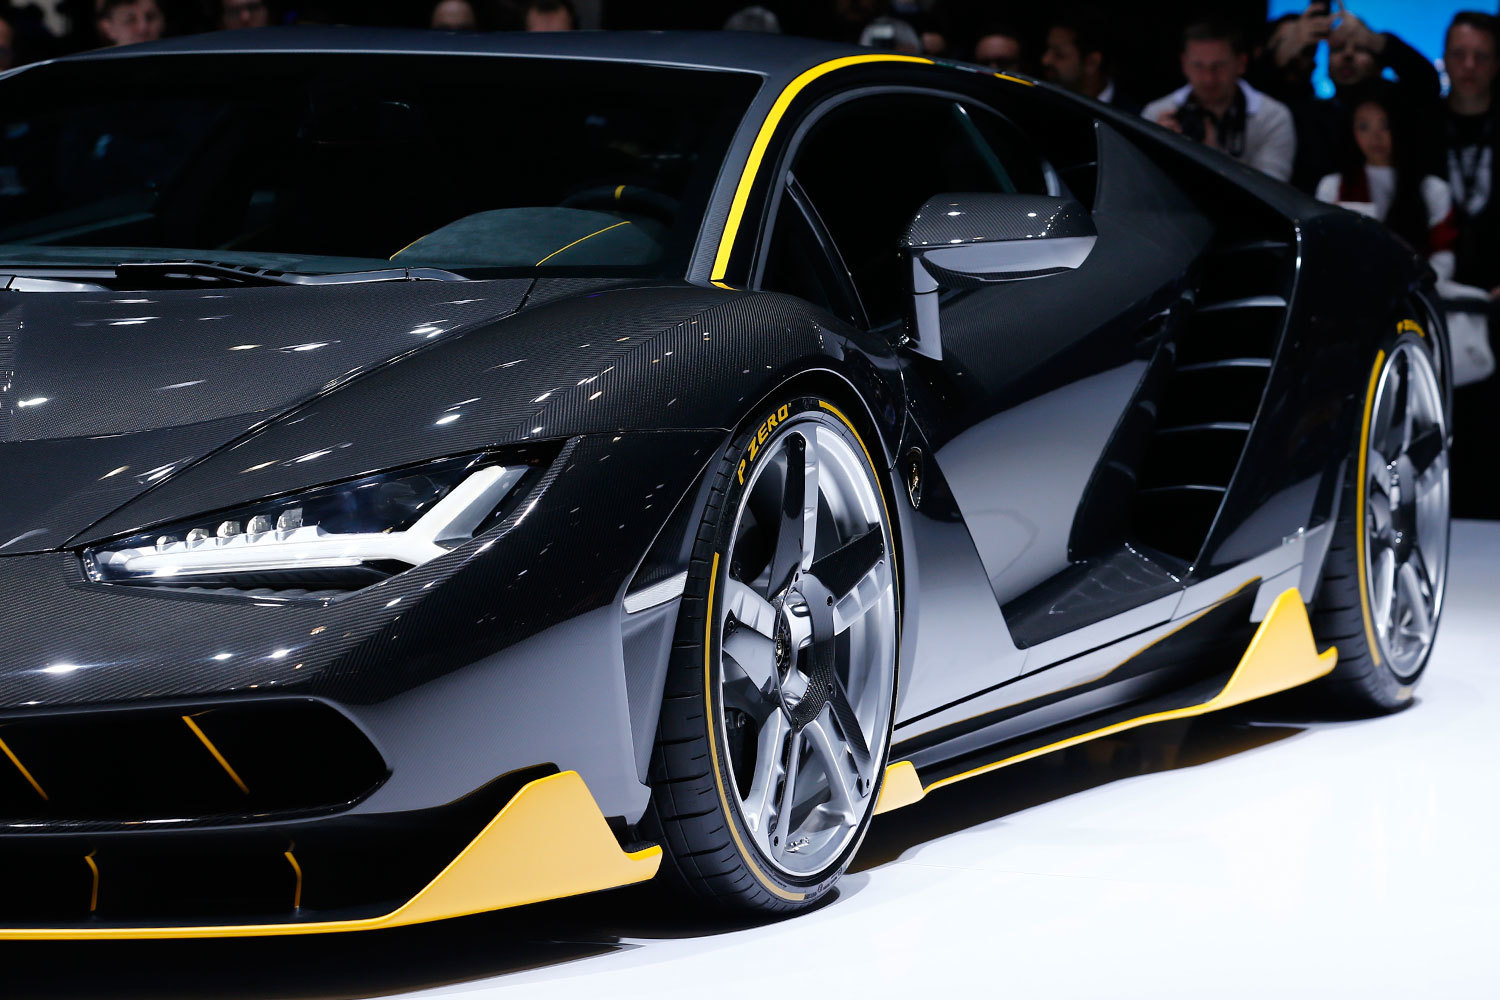 Lamborghini Centenario Wallpapers Images Photos Pictures ...